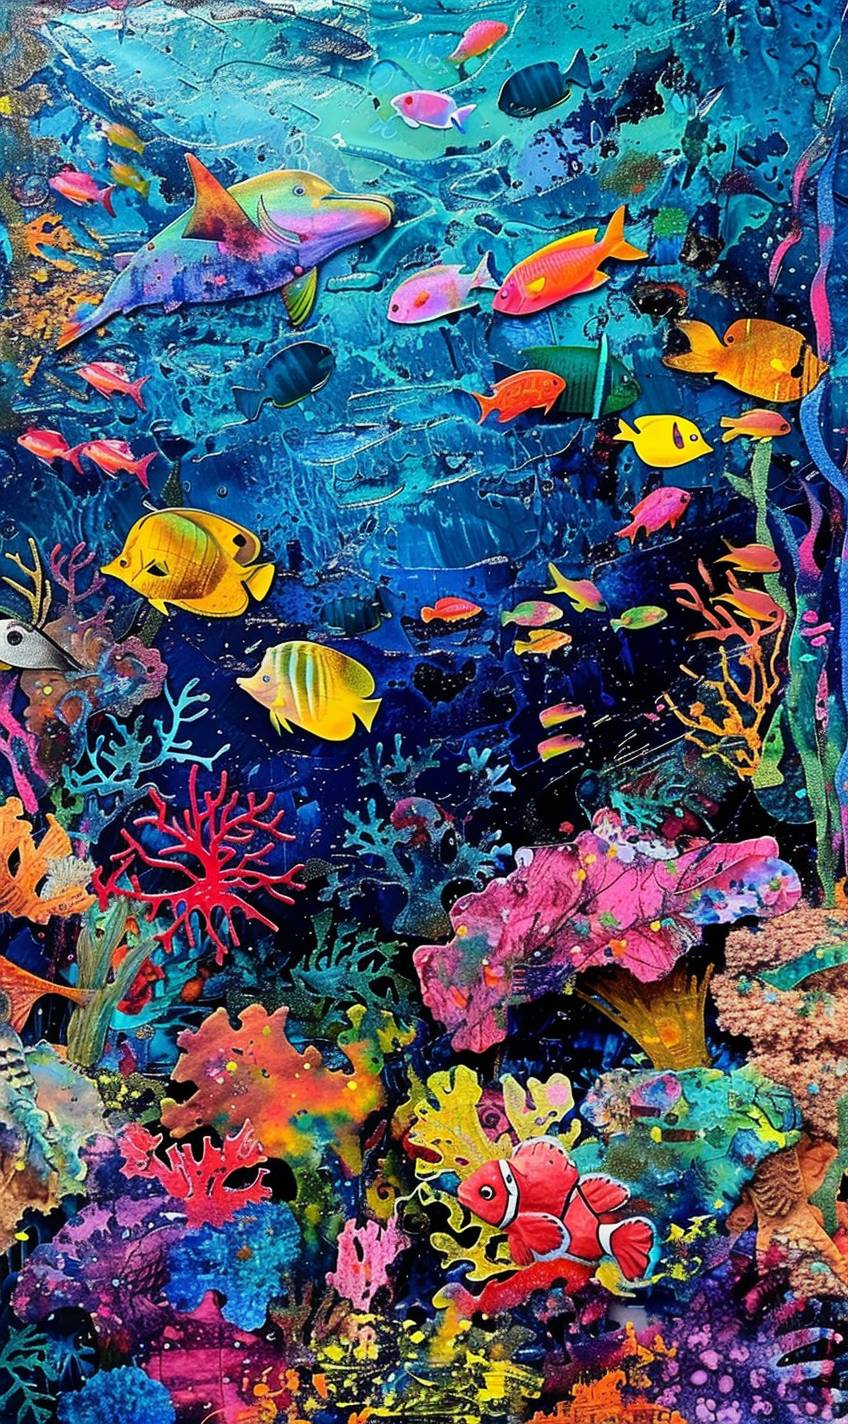 ヘルマン・ブロードによる生き生きとした海底のサンゴ礁、色とりどりの魚や海洋生物で溢れている